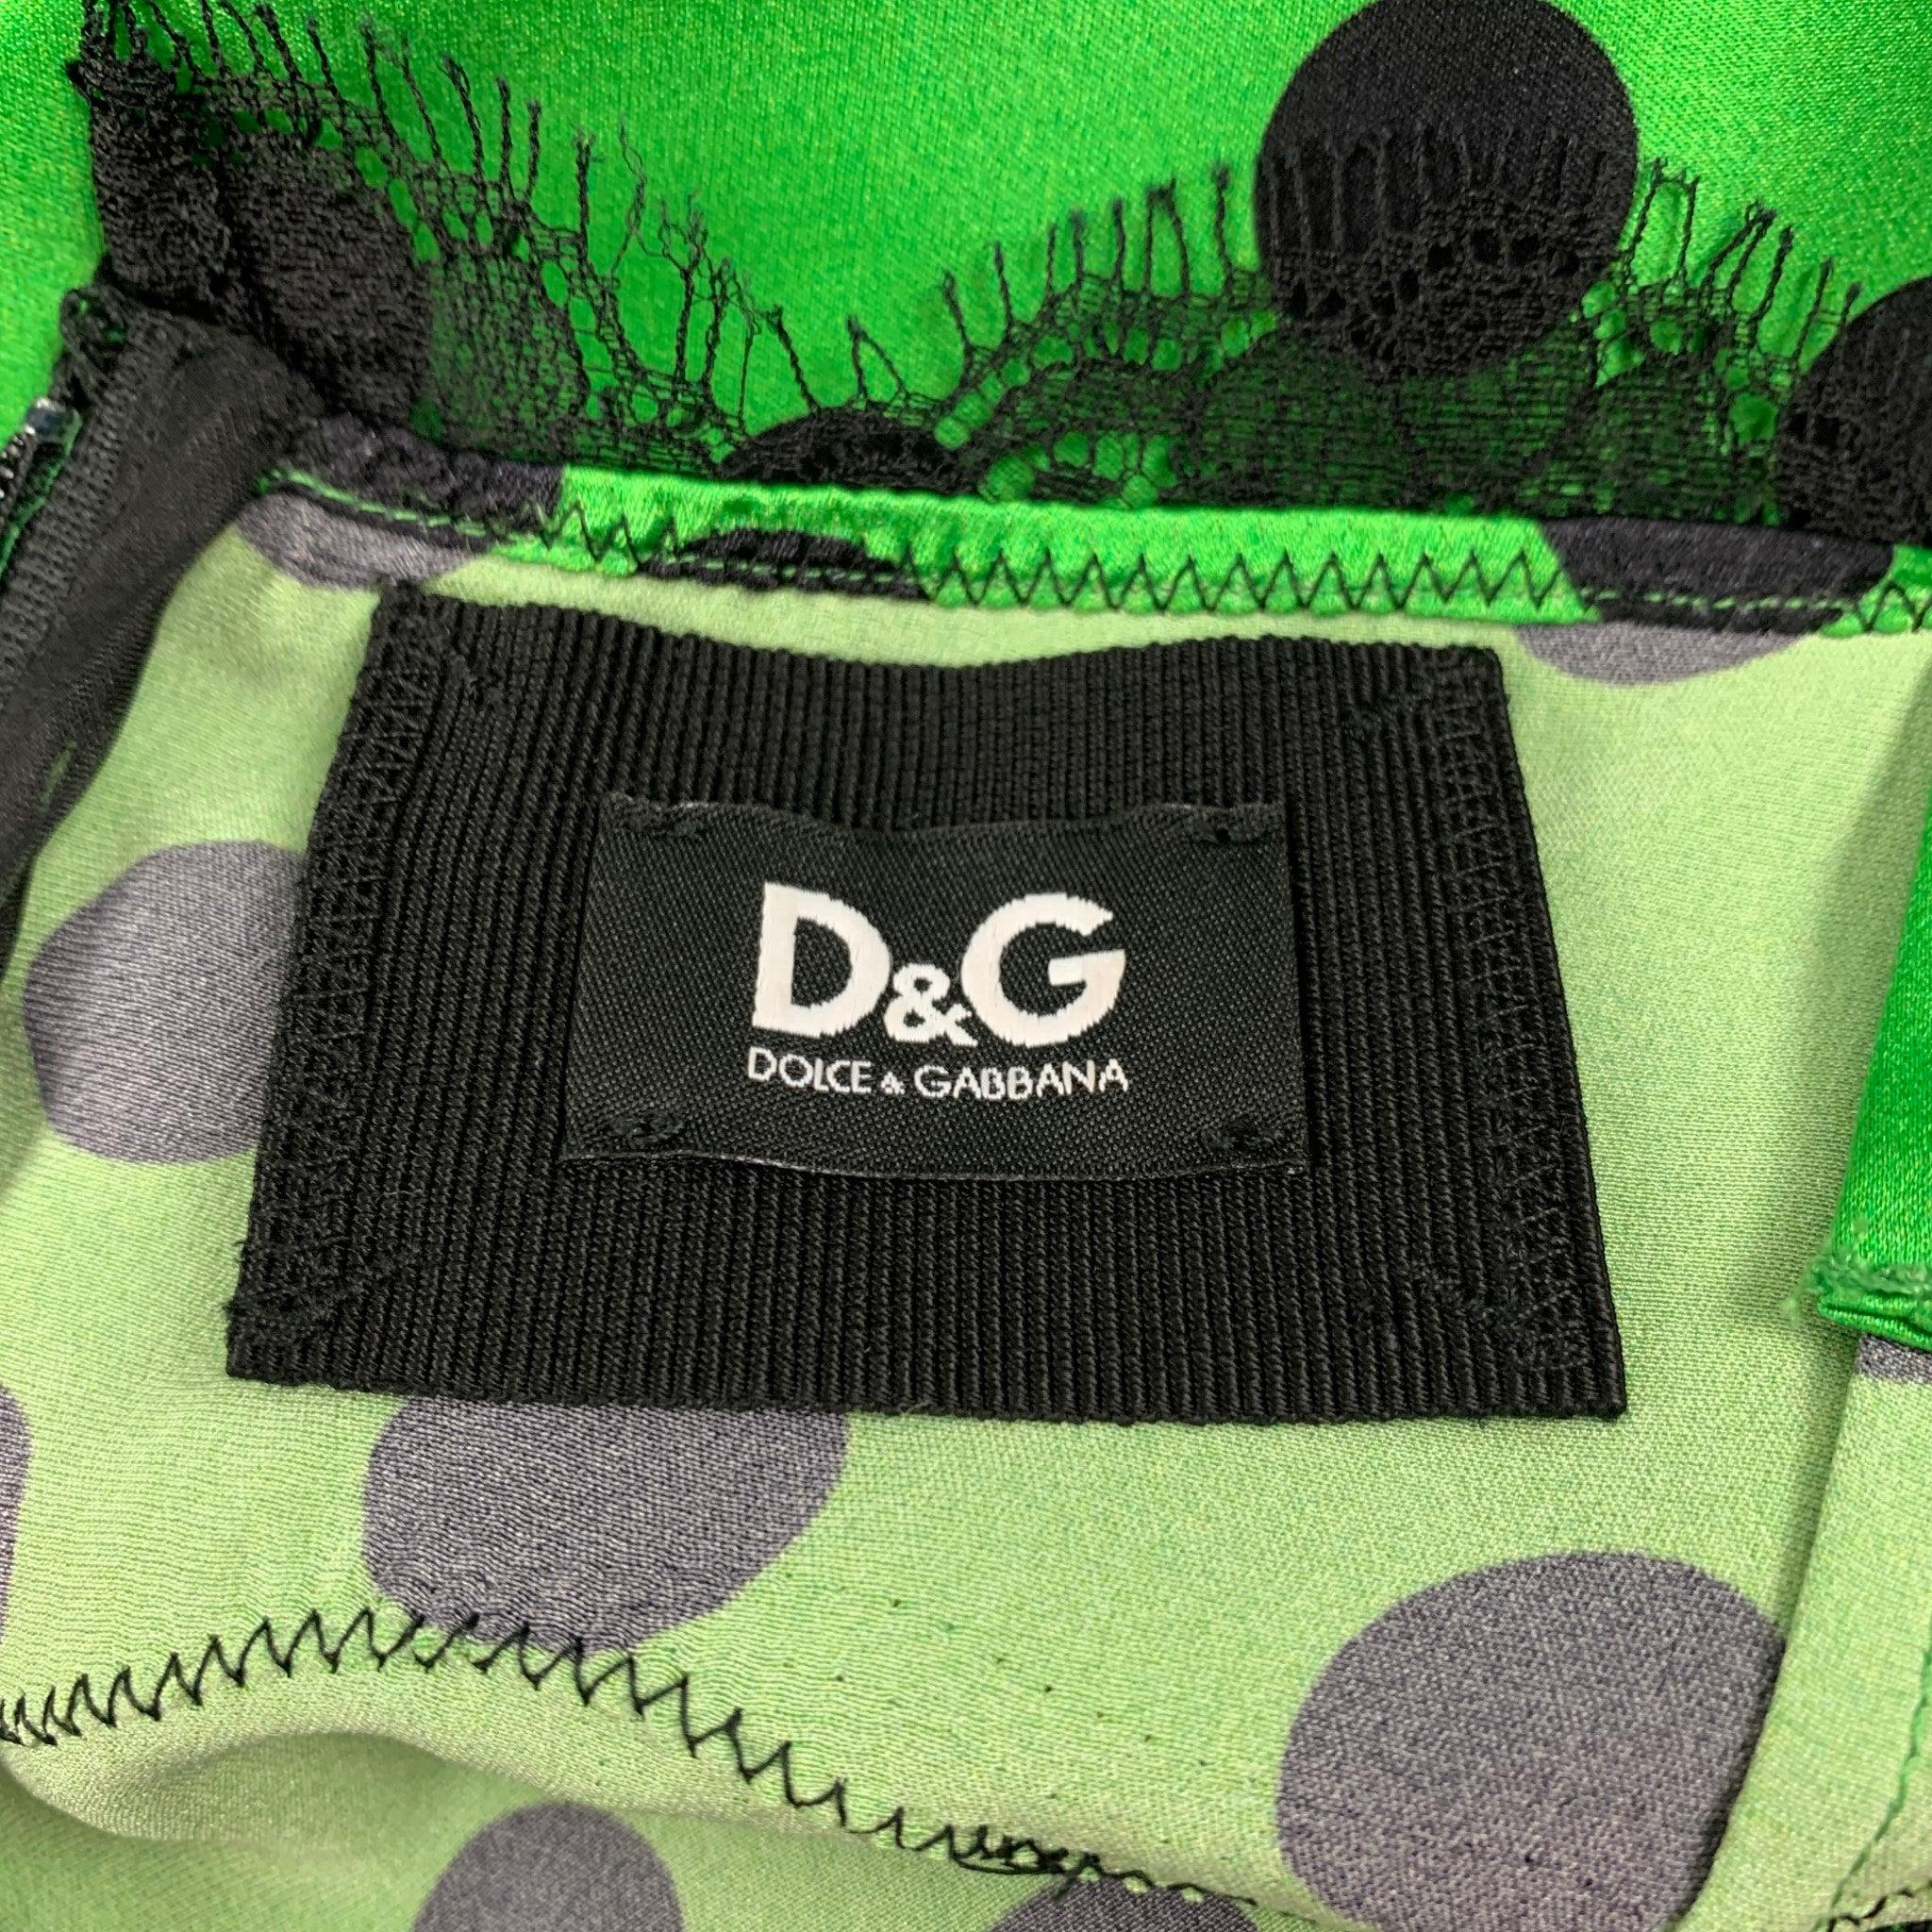 D&G by DOLCE & GABBANA Size 8 Green Black Silk Polka Dot Casual Top 3